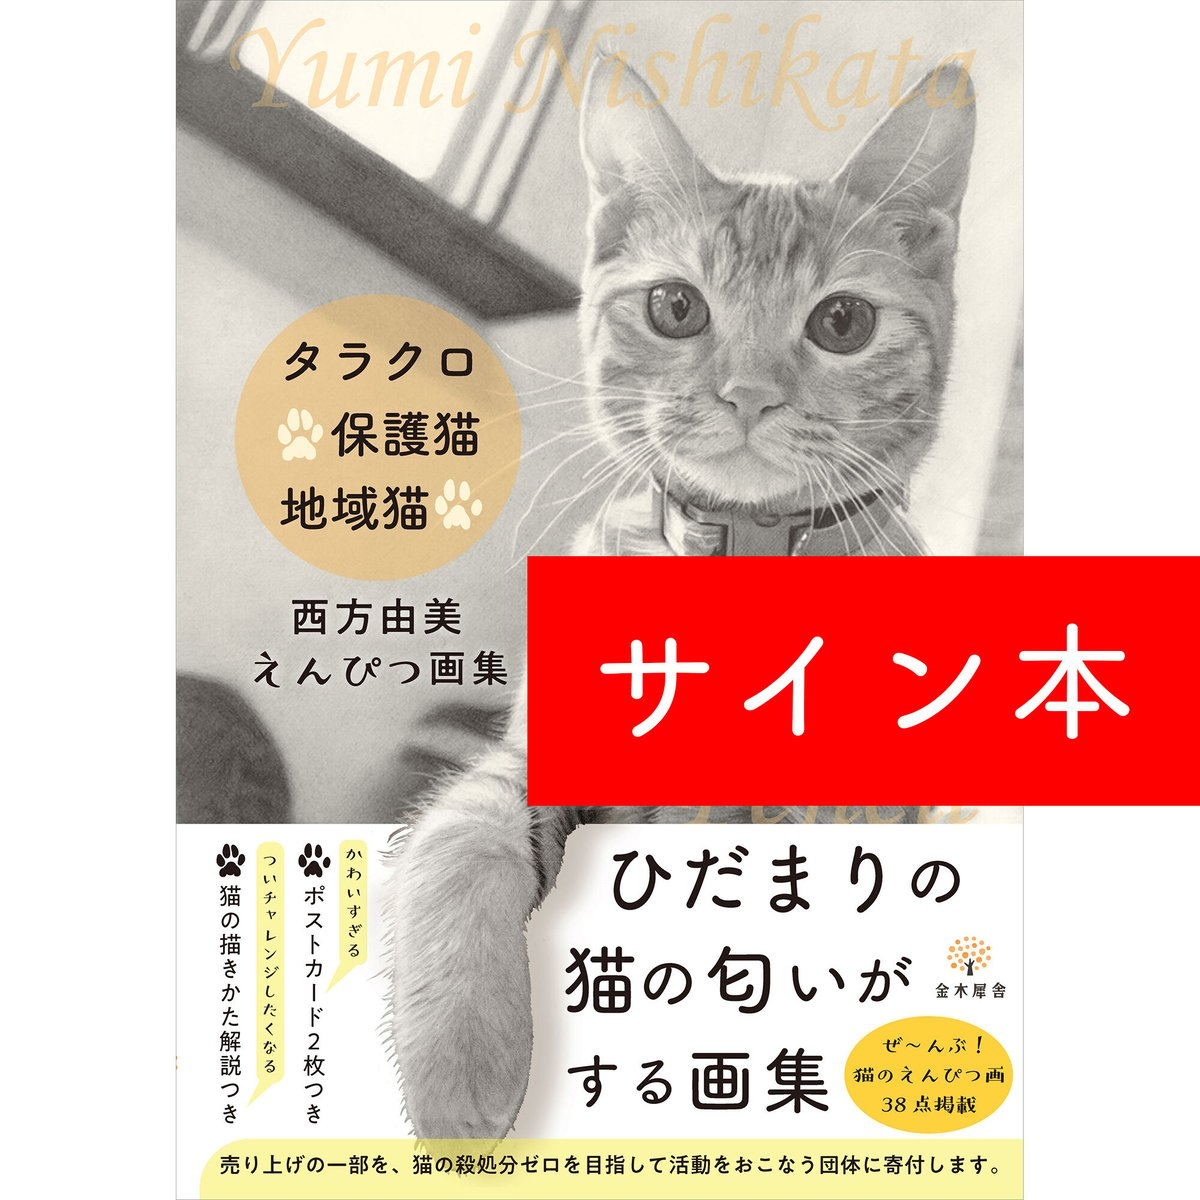 【サイン本】タラクロ・保護猫・地域猫〜西方由美えんぴつ画集